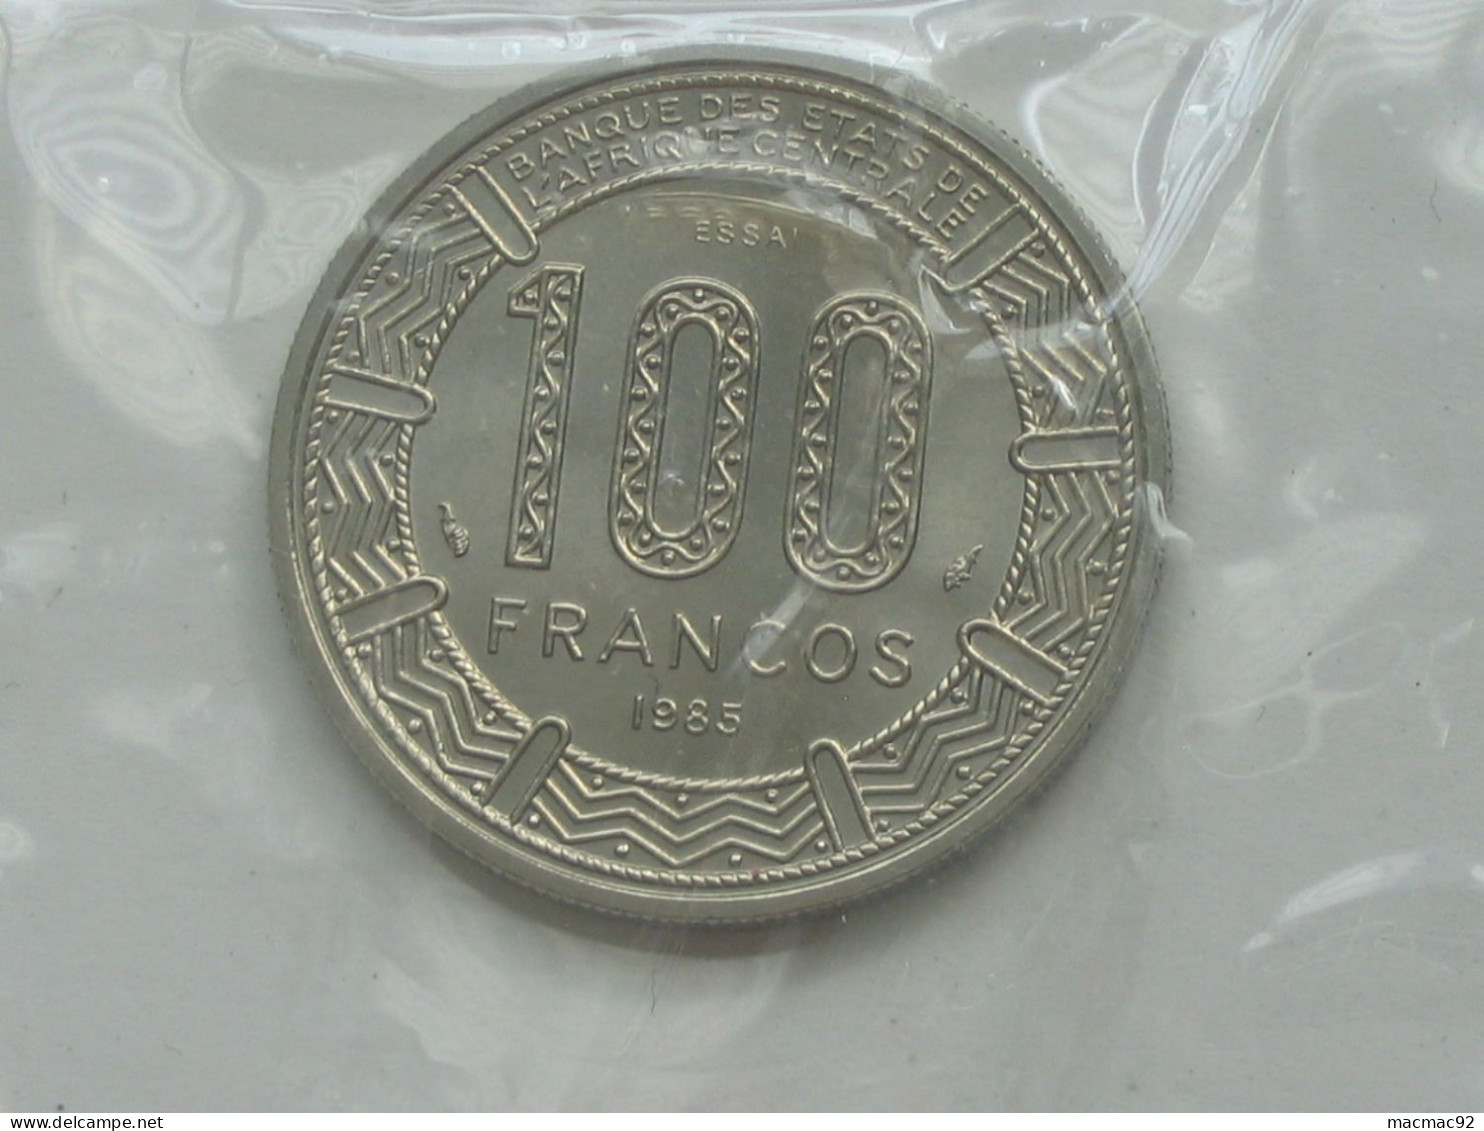 GUINEE EQUATORIALE - Rare ESSAI De 100 Francs 1985 - Banque Des états De L'Afrique Centrale  **** EN ACHAT IMMEDIAT **** - Equatoriaal Guinea